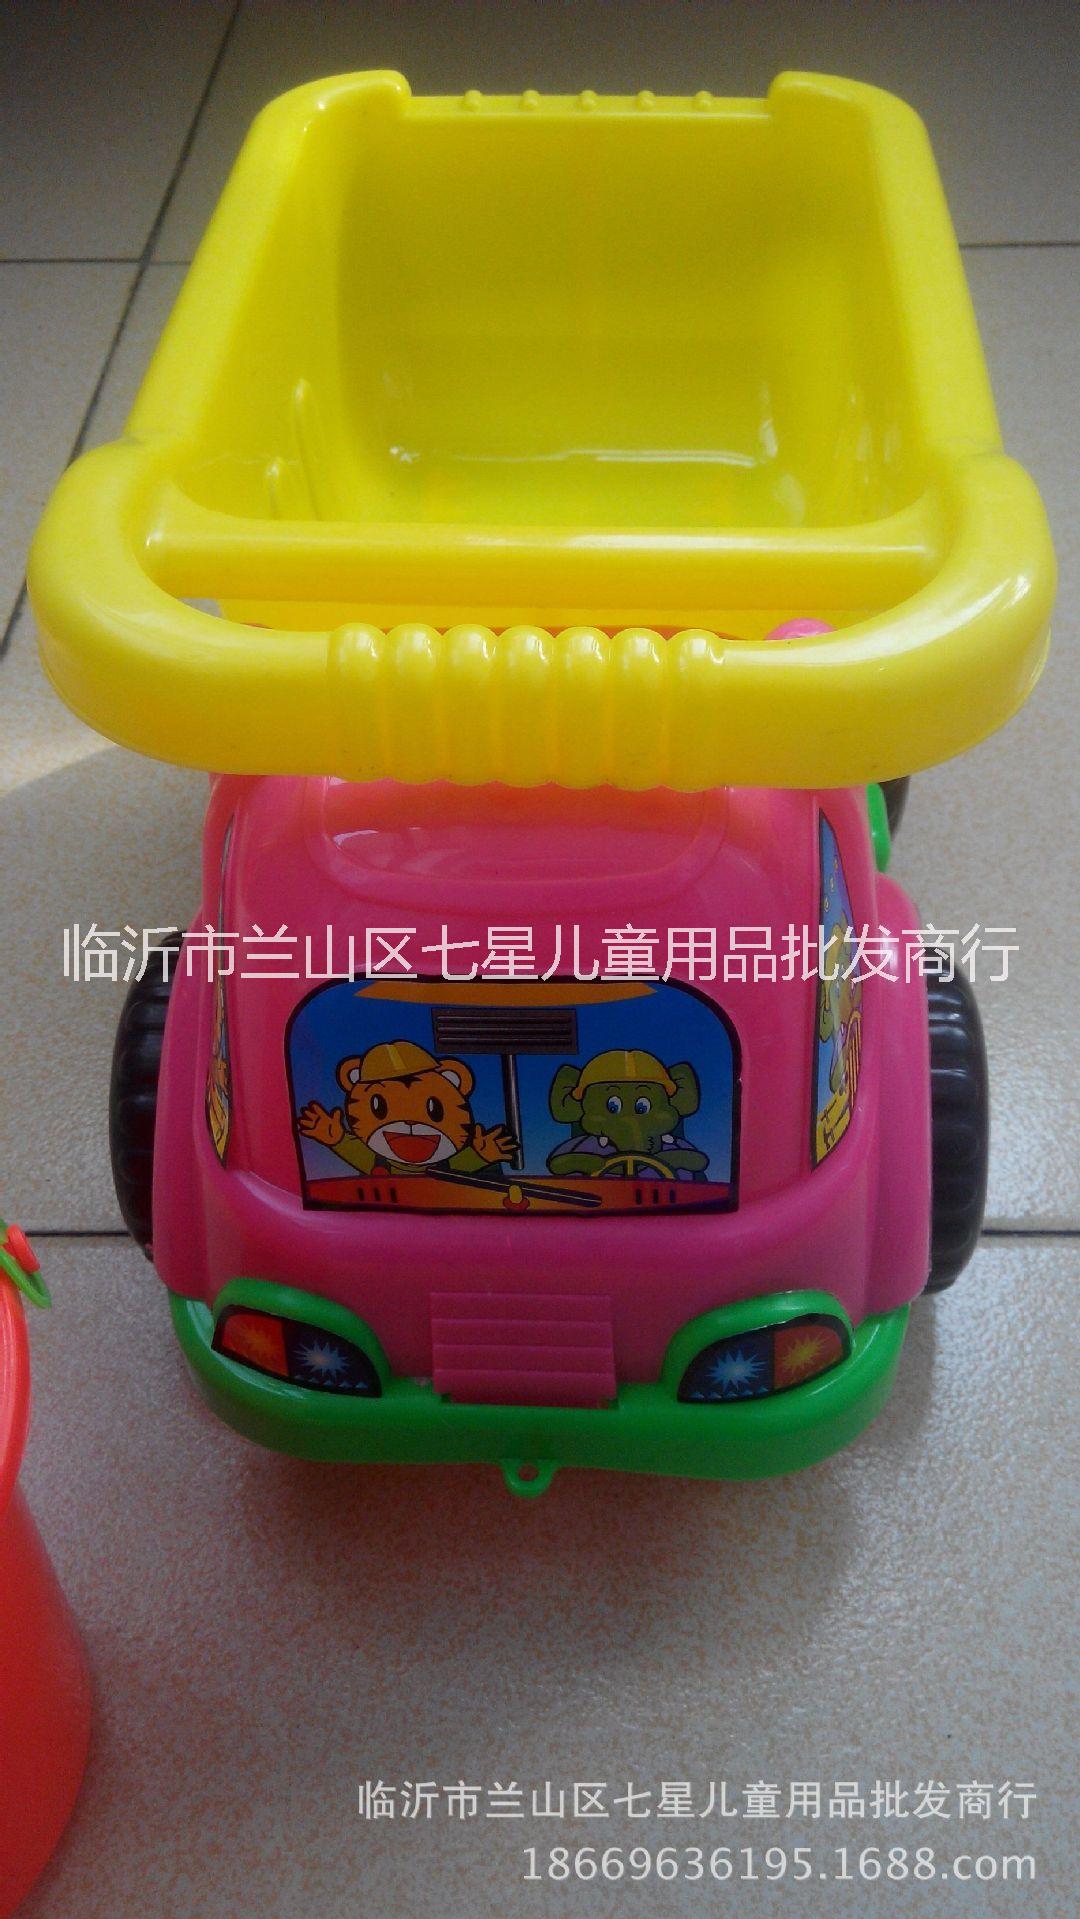 2016新款加厚临沂沙滩玩具批发儿童沙滩车挖图挖沙玩具